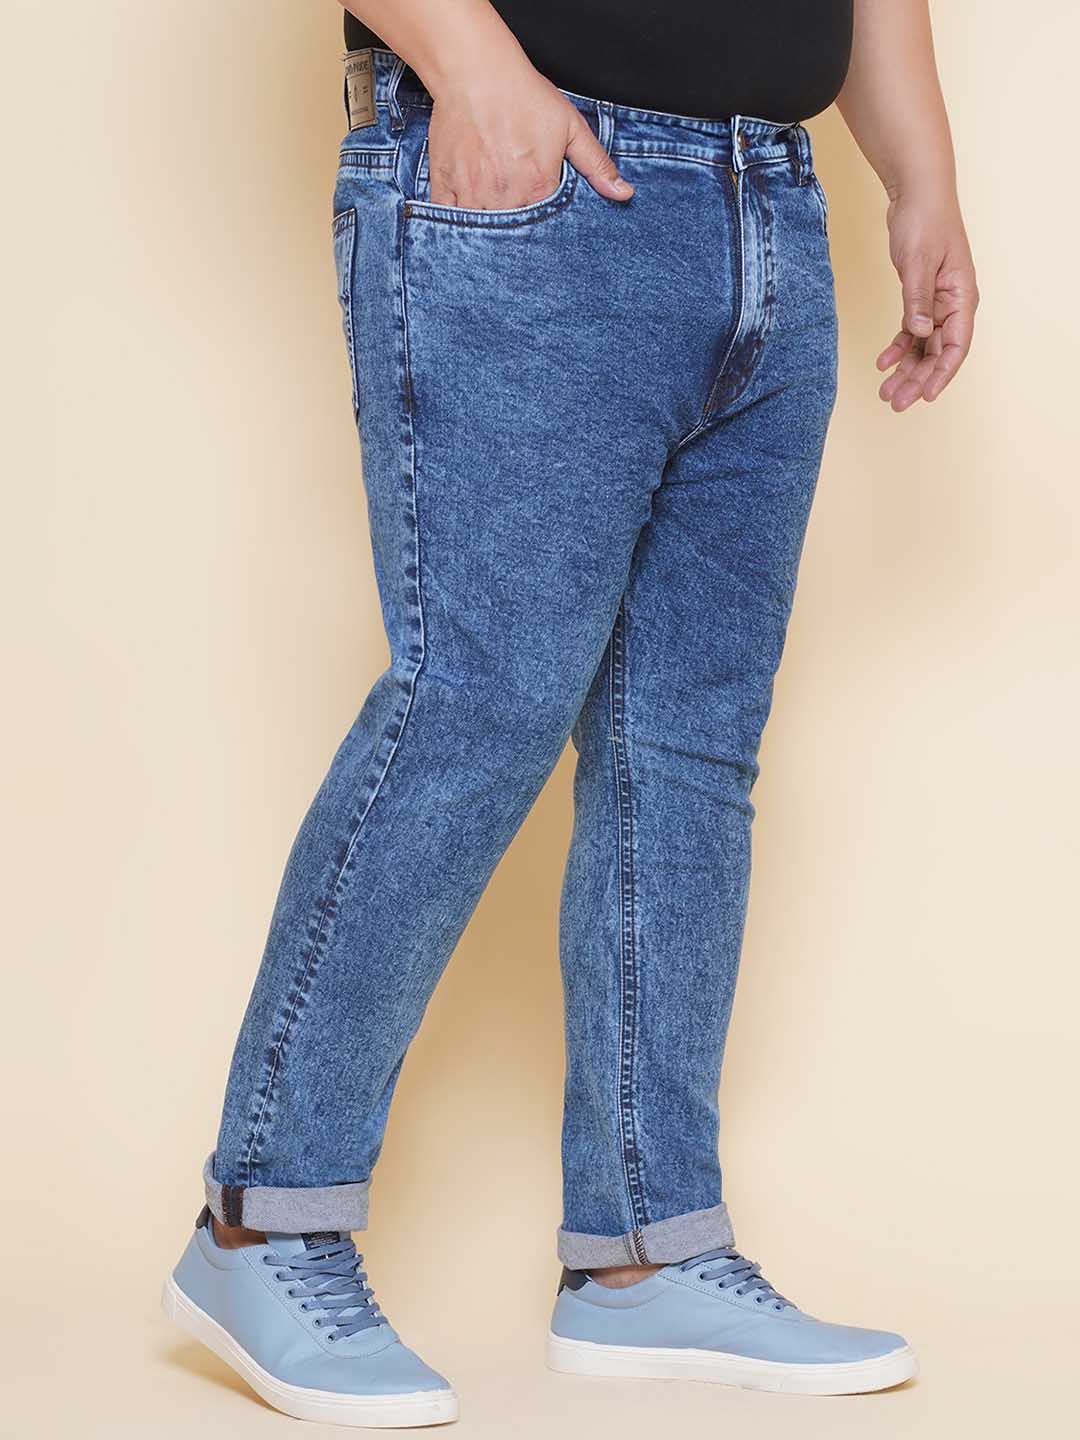 bottomwear/jeans/EJPJ25142/ejpj25142-3.jpg